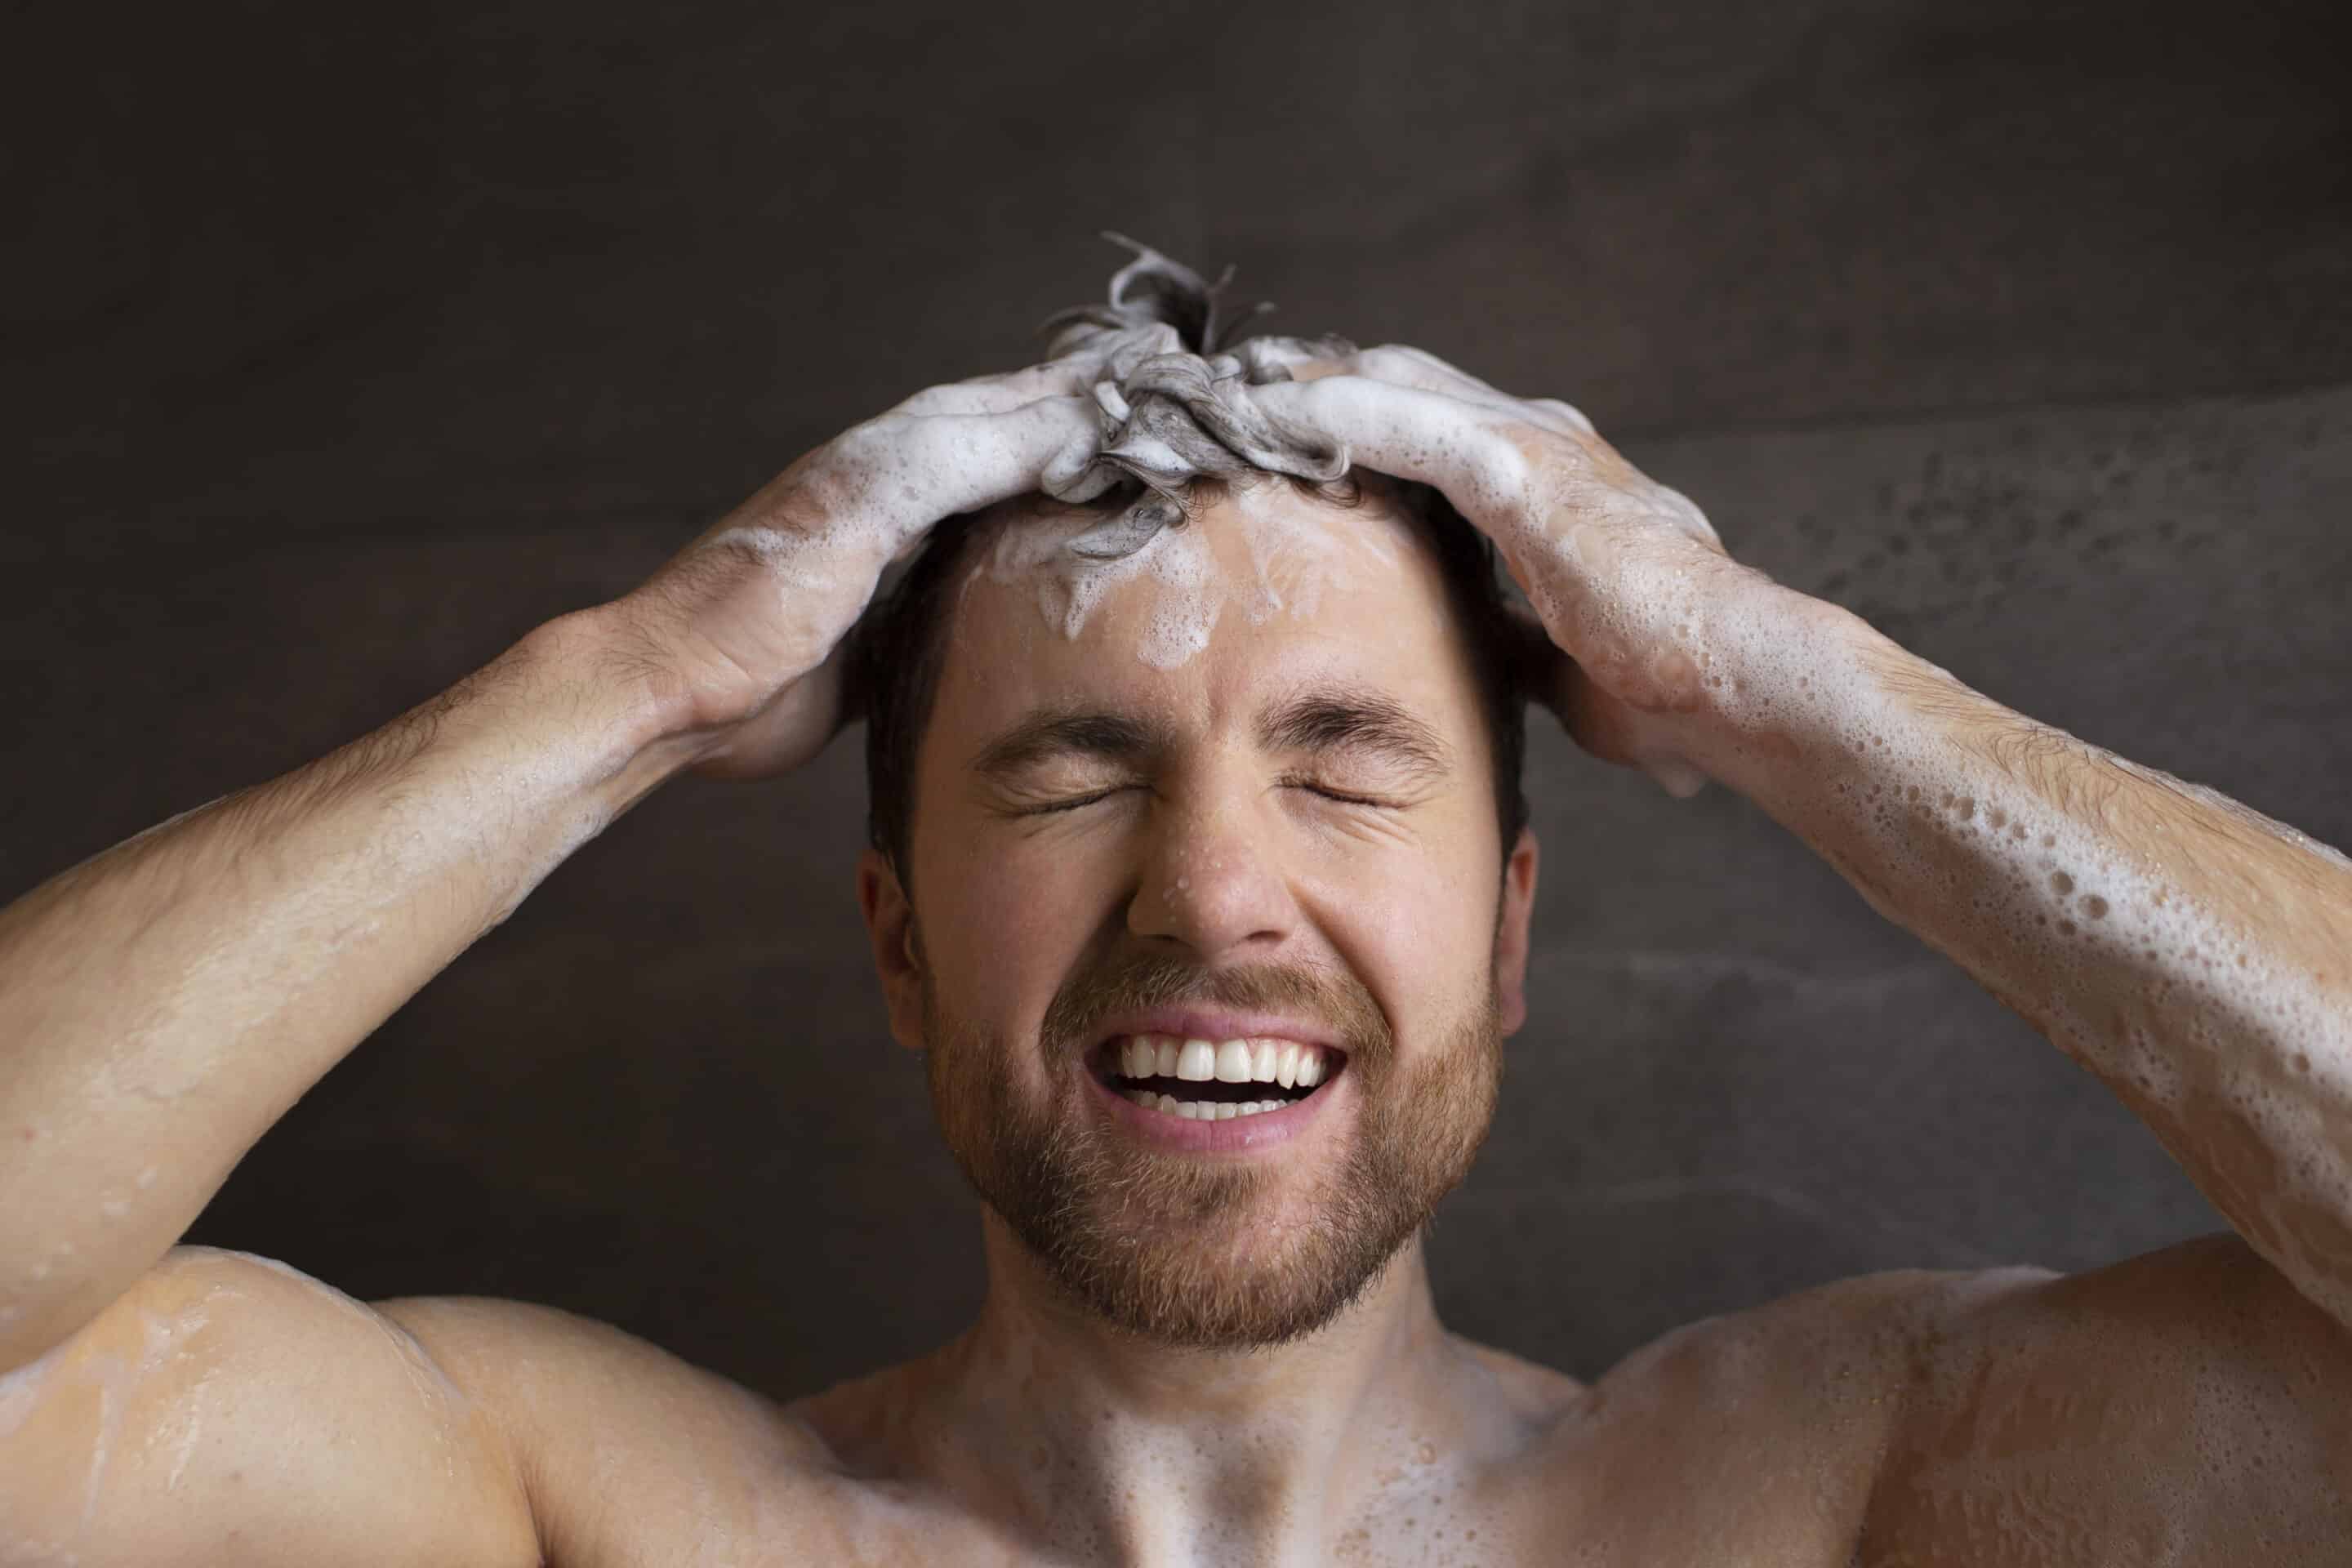 comment bien se laver les cheveux homme